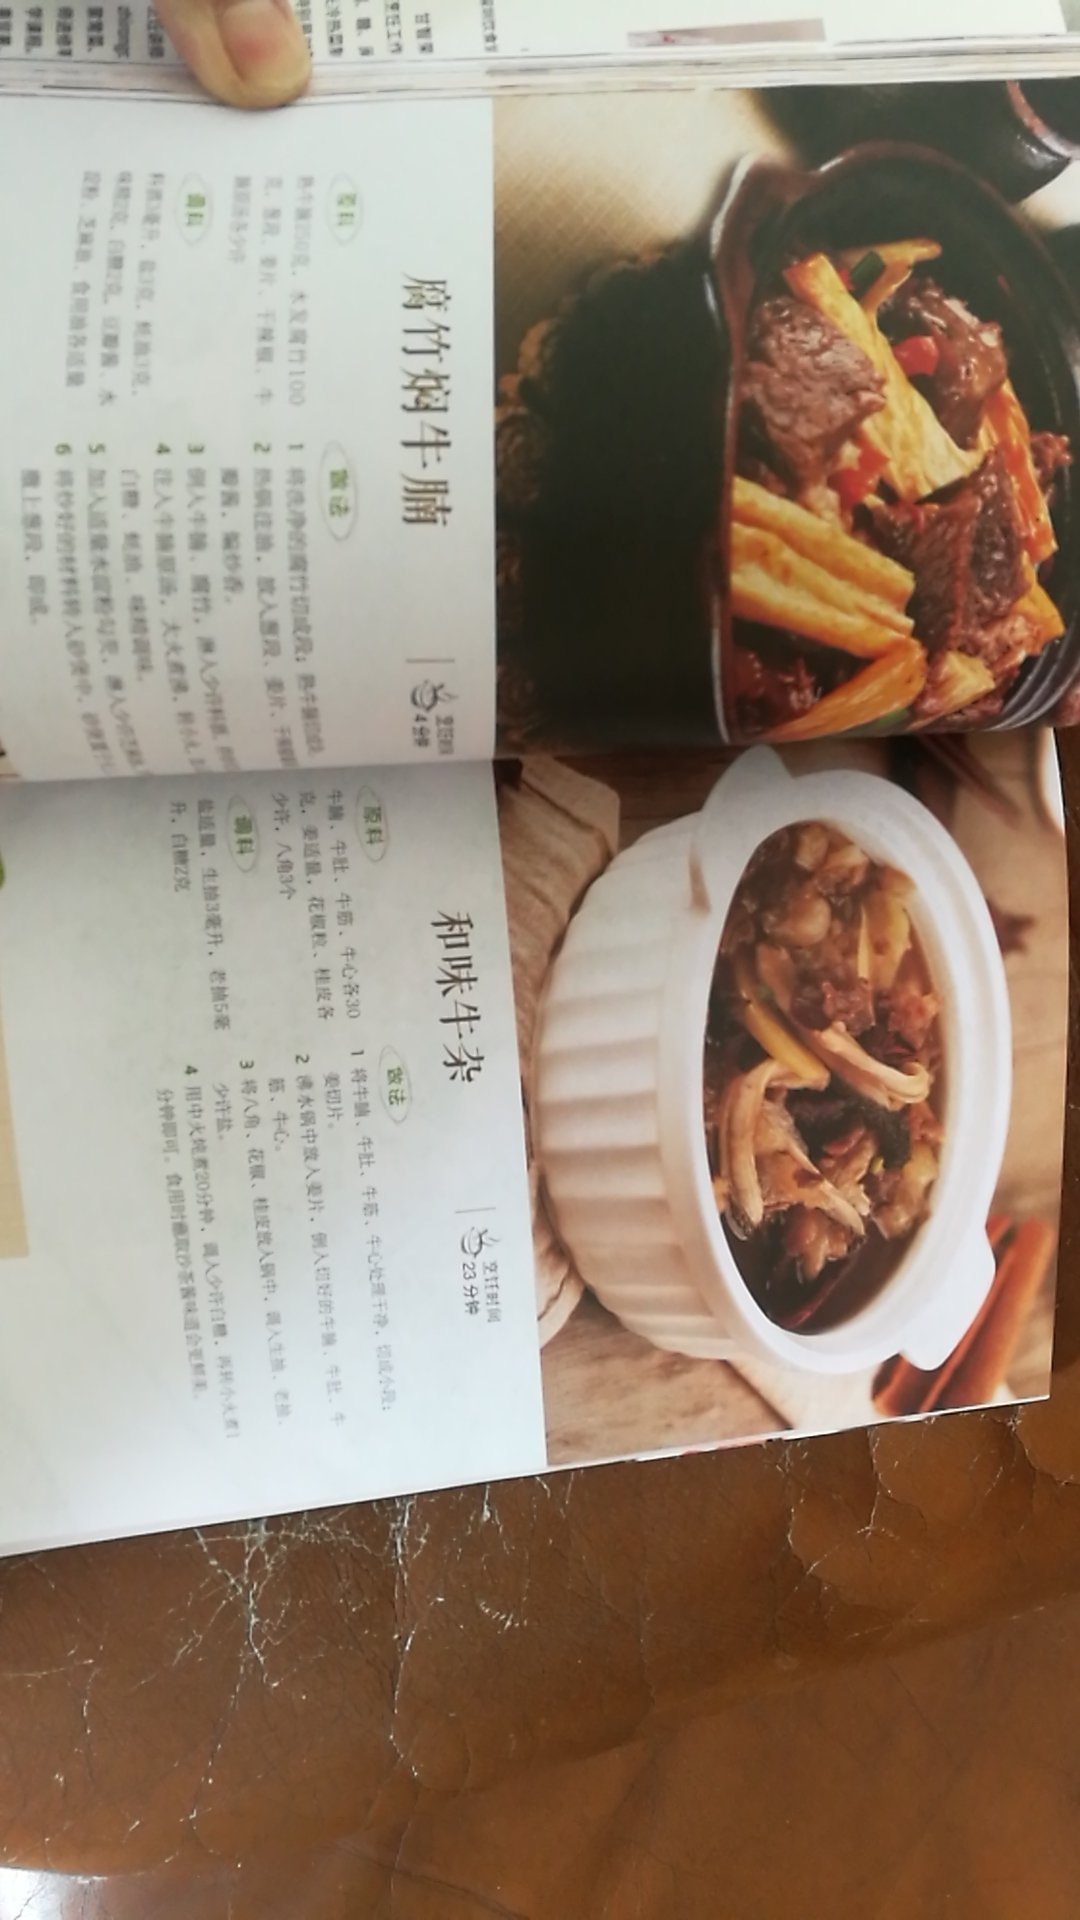 书本好多经典的粤菜，买回来好好学习做菜，哈哈！